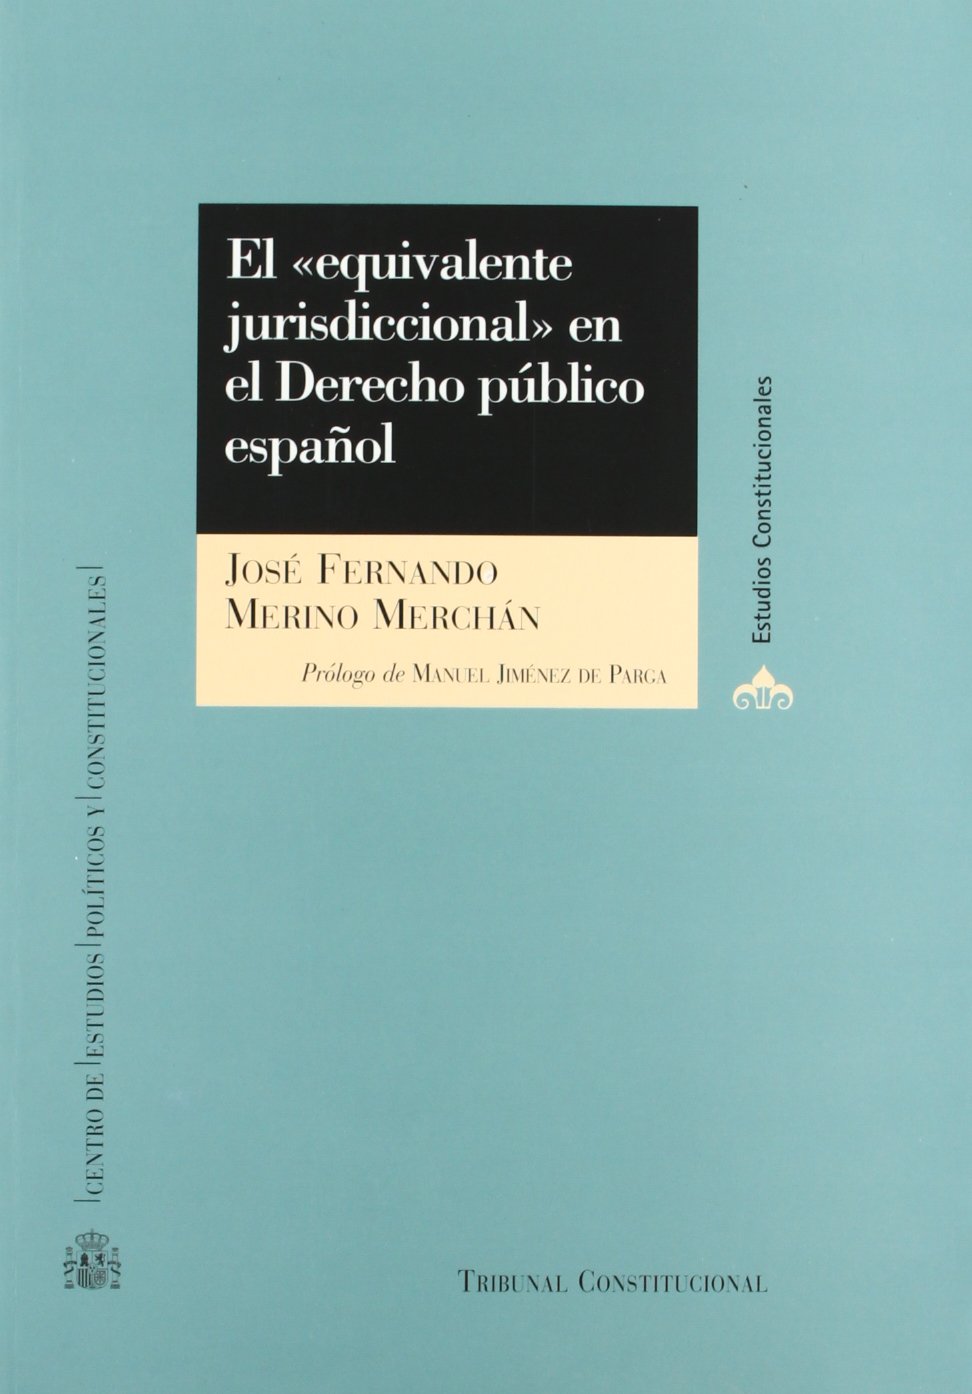 El "equivalente jurisdiccional" en el Derecho Público Español. 9788425912030